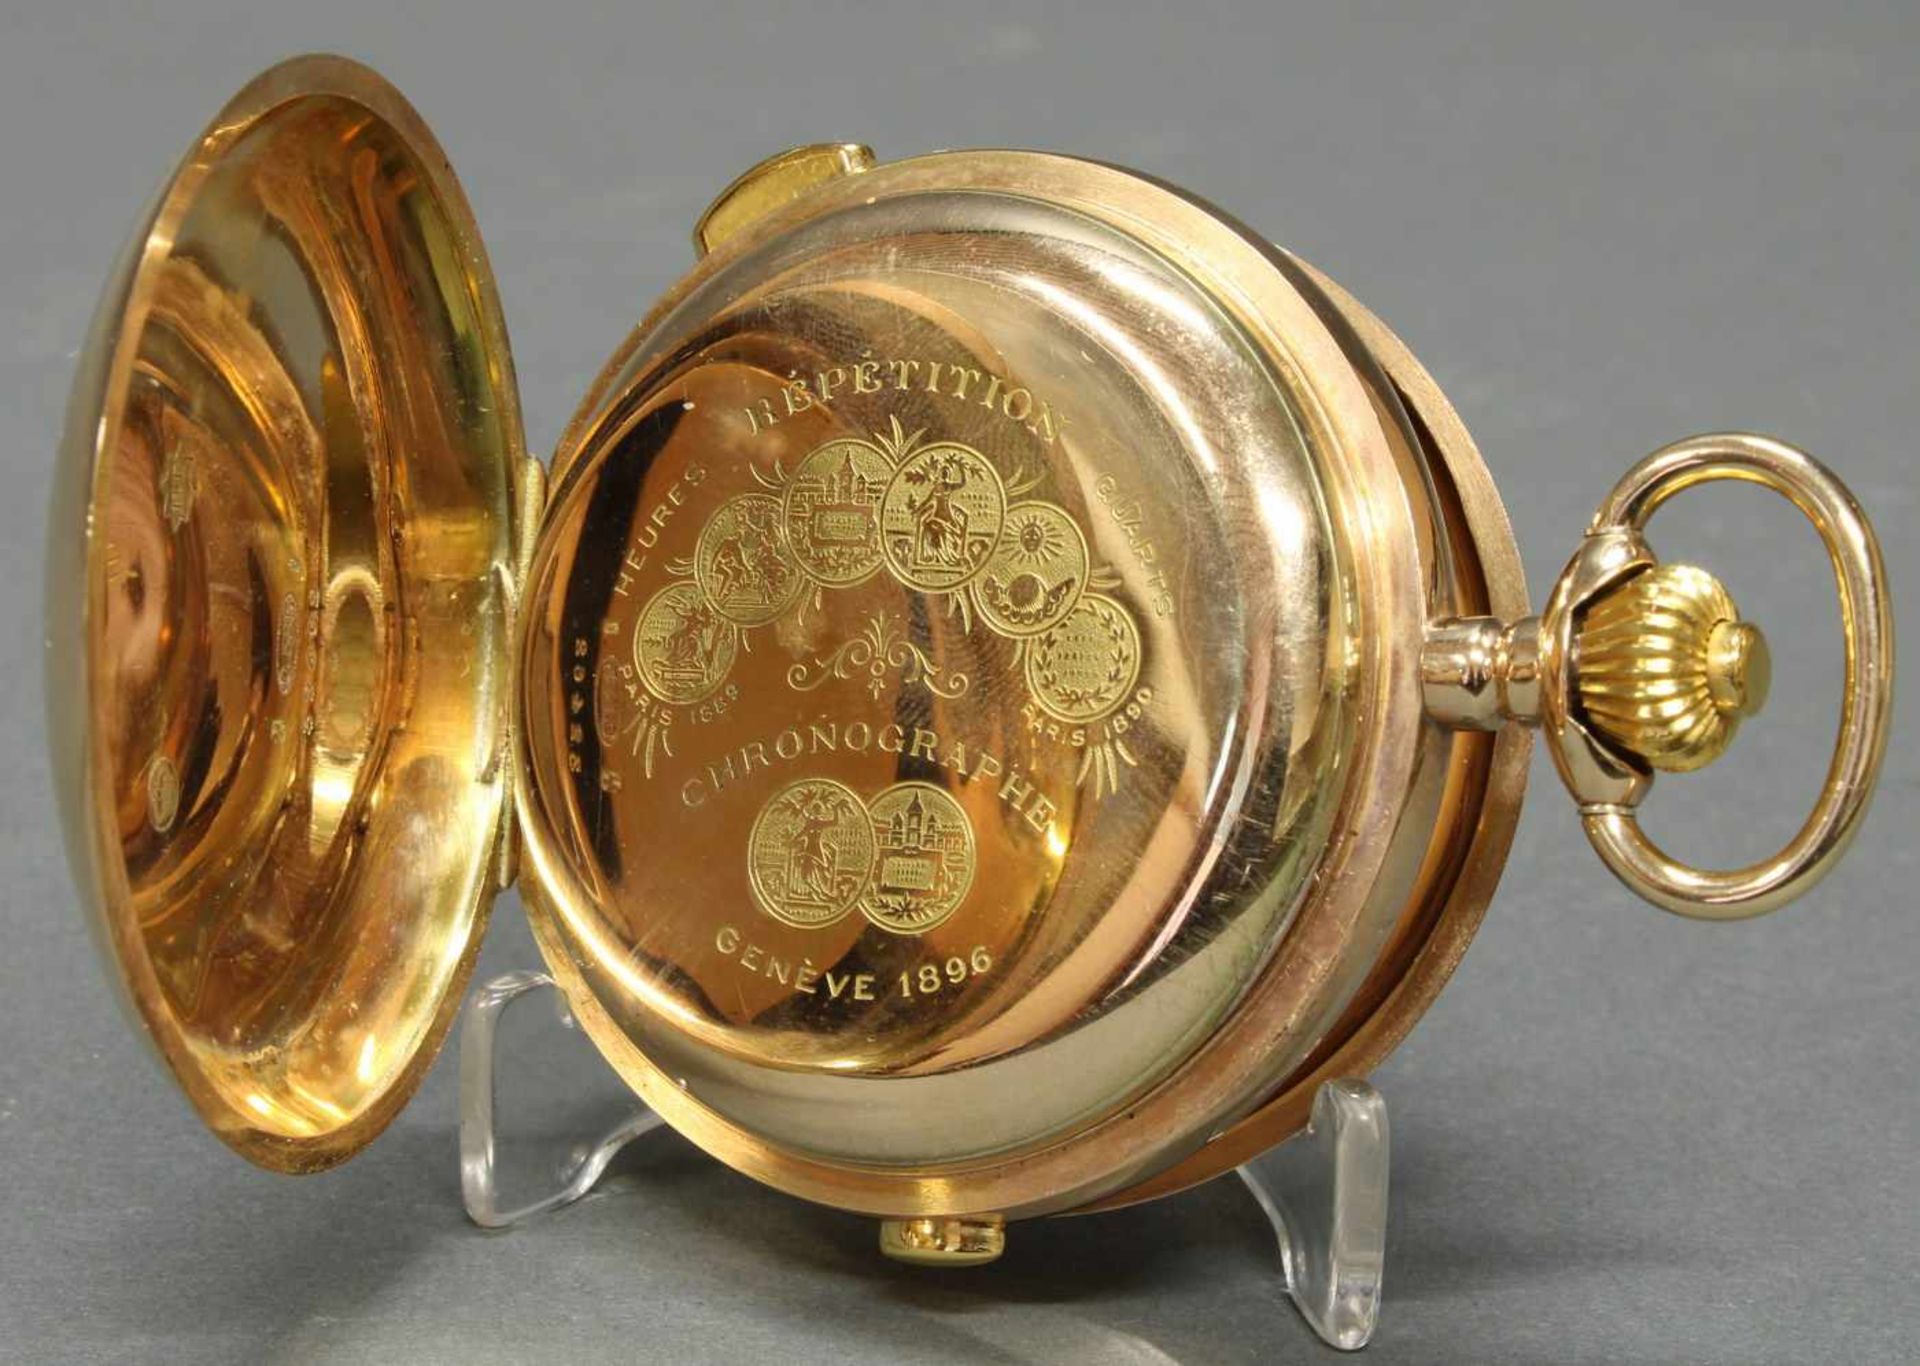 Herrentaschenuhr, Savonette, um 1900, 1/4-Stunden-Repetition, Chronograph, GG 585, Staubdeckel Gold, - Bild 3 aus 6